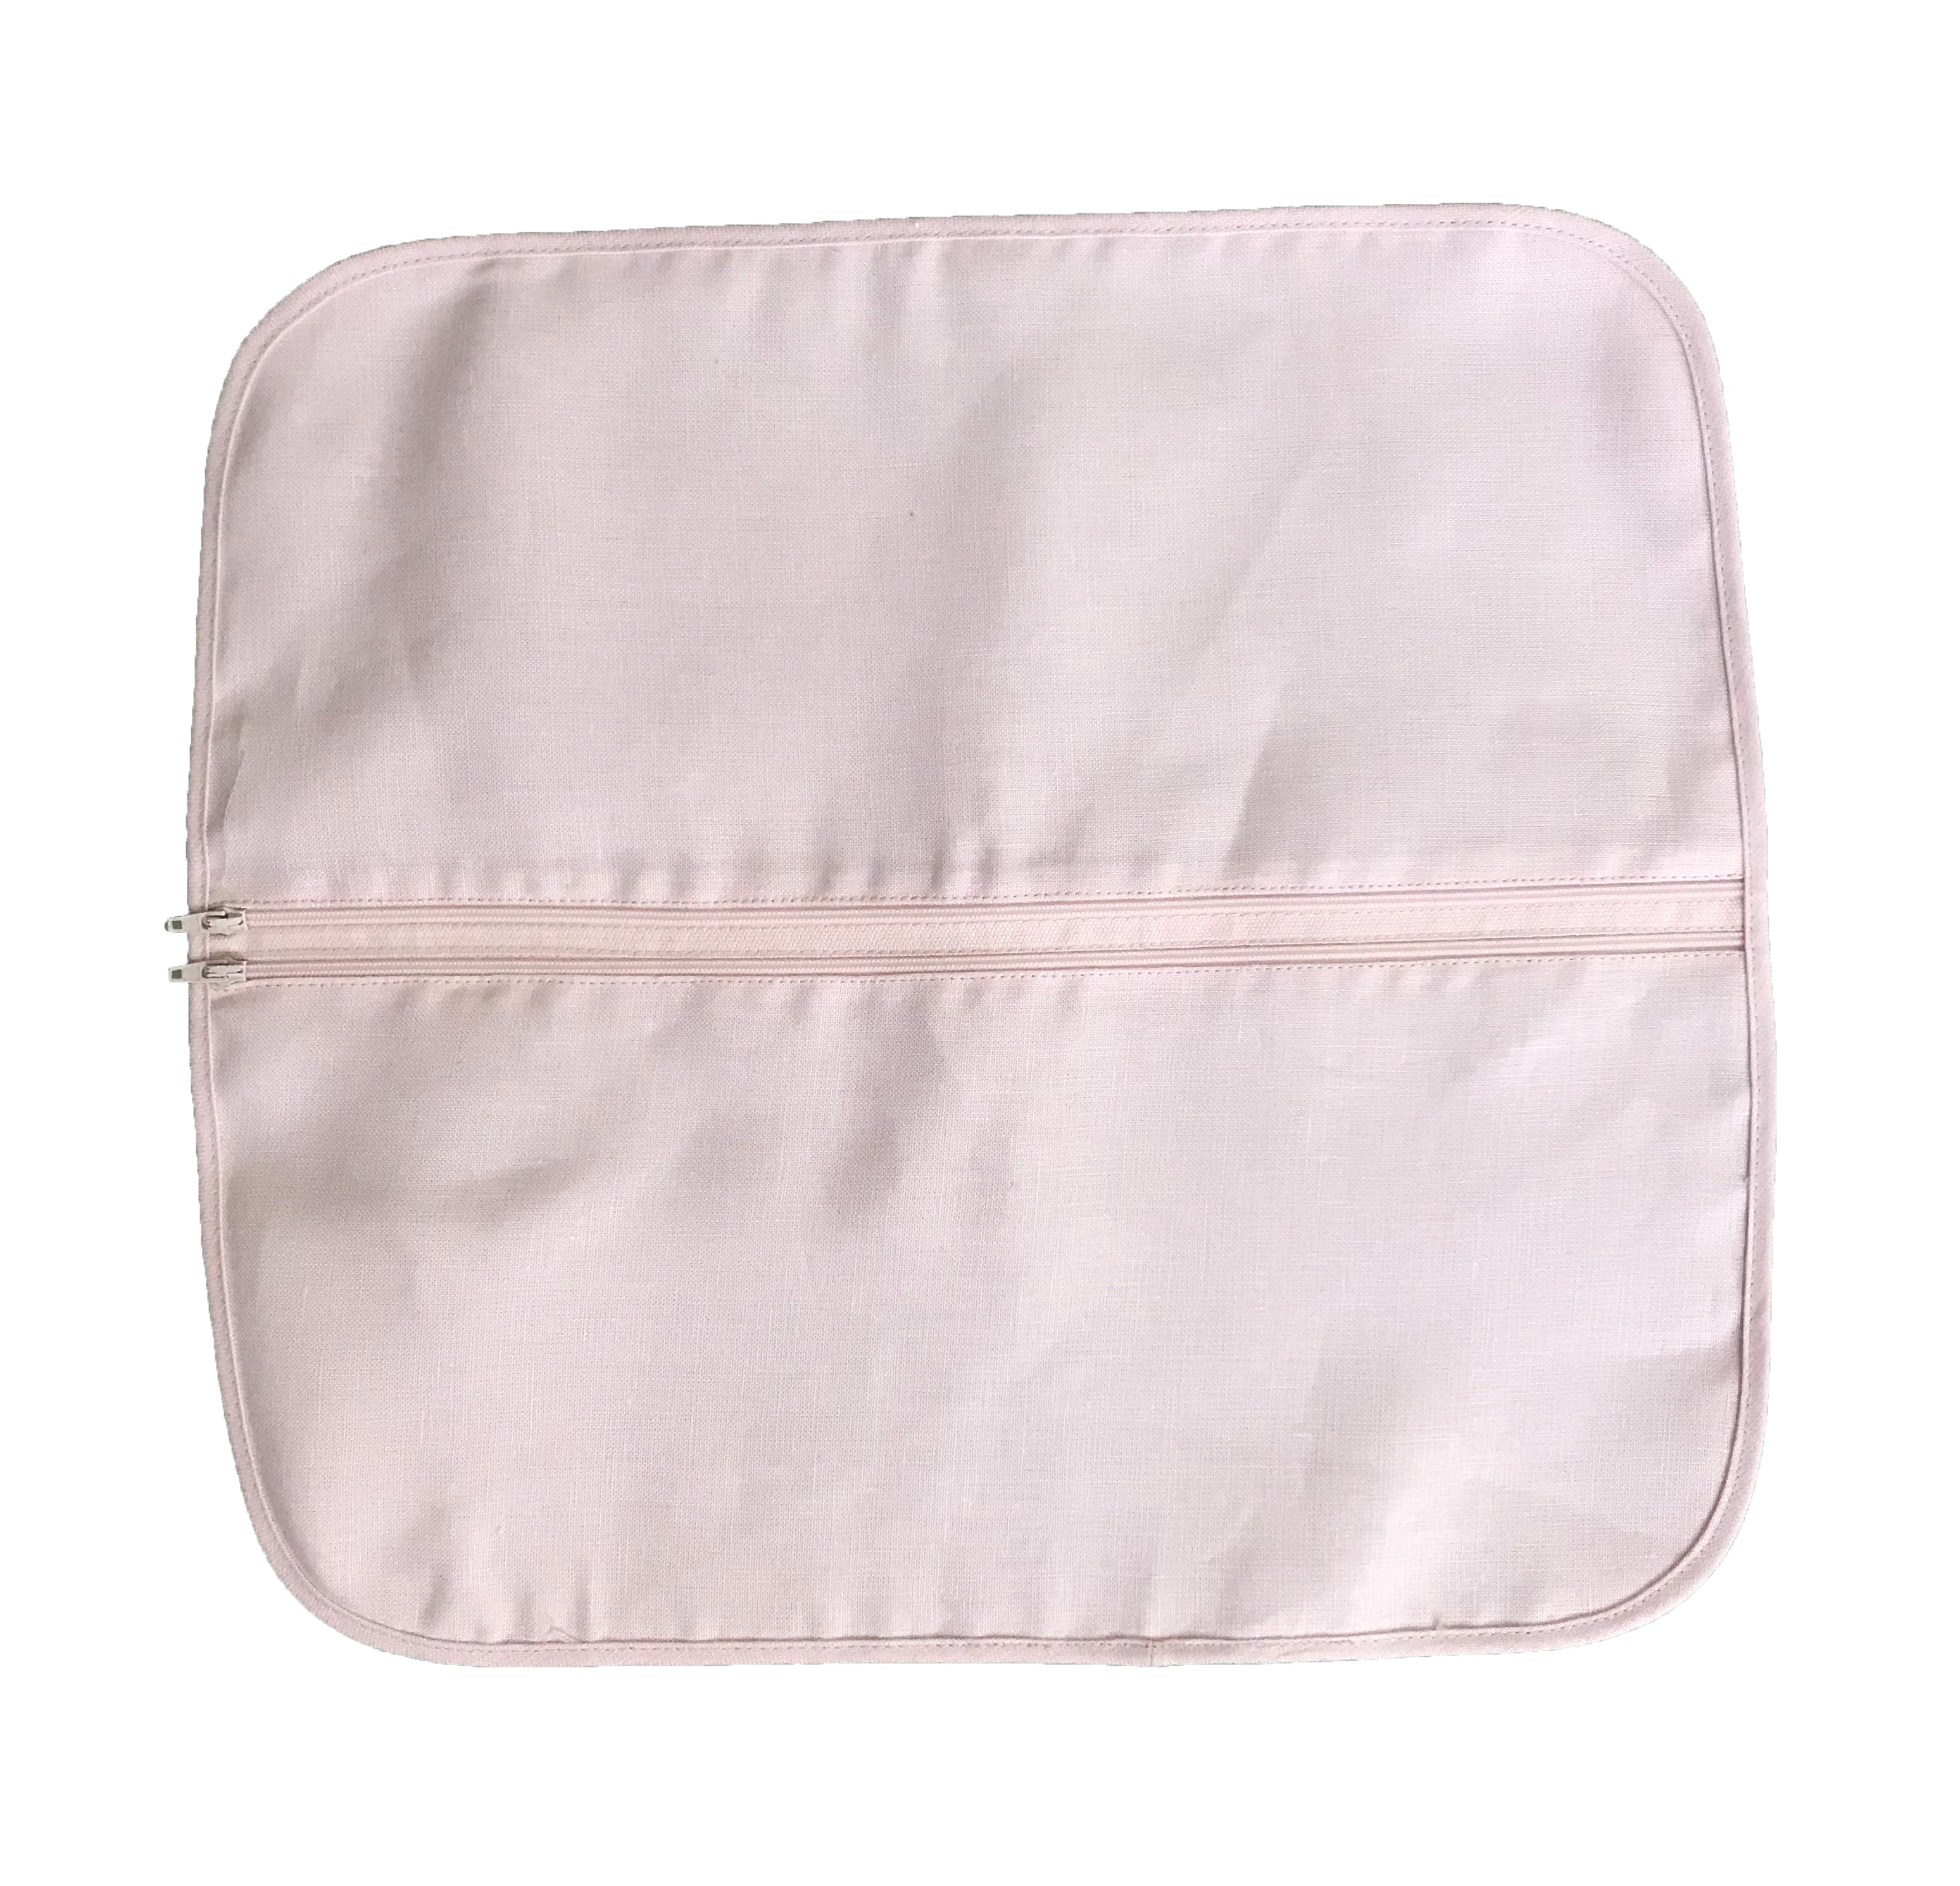 Linen Lingerie Bag